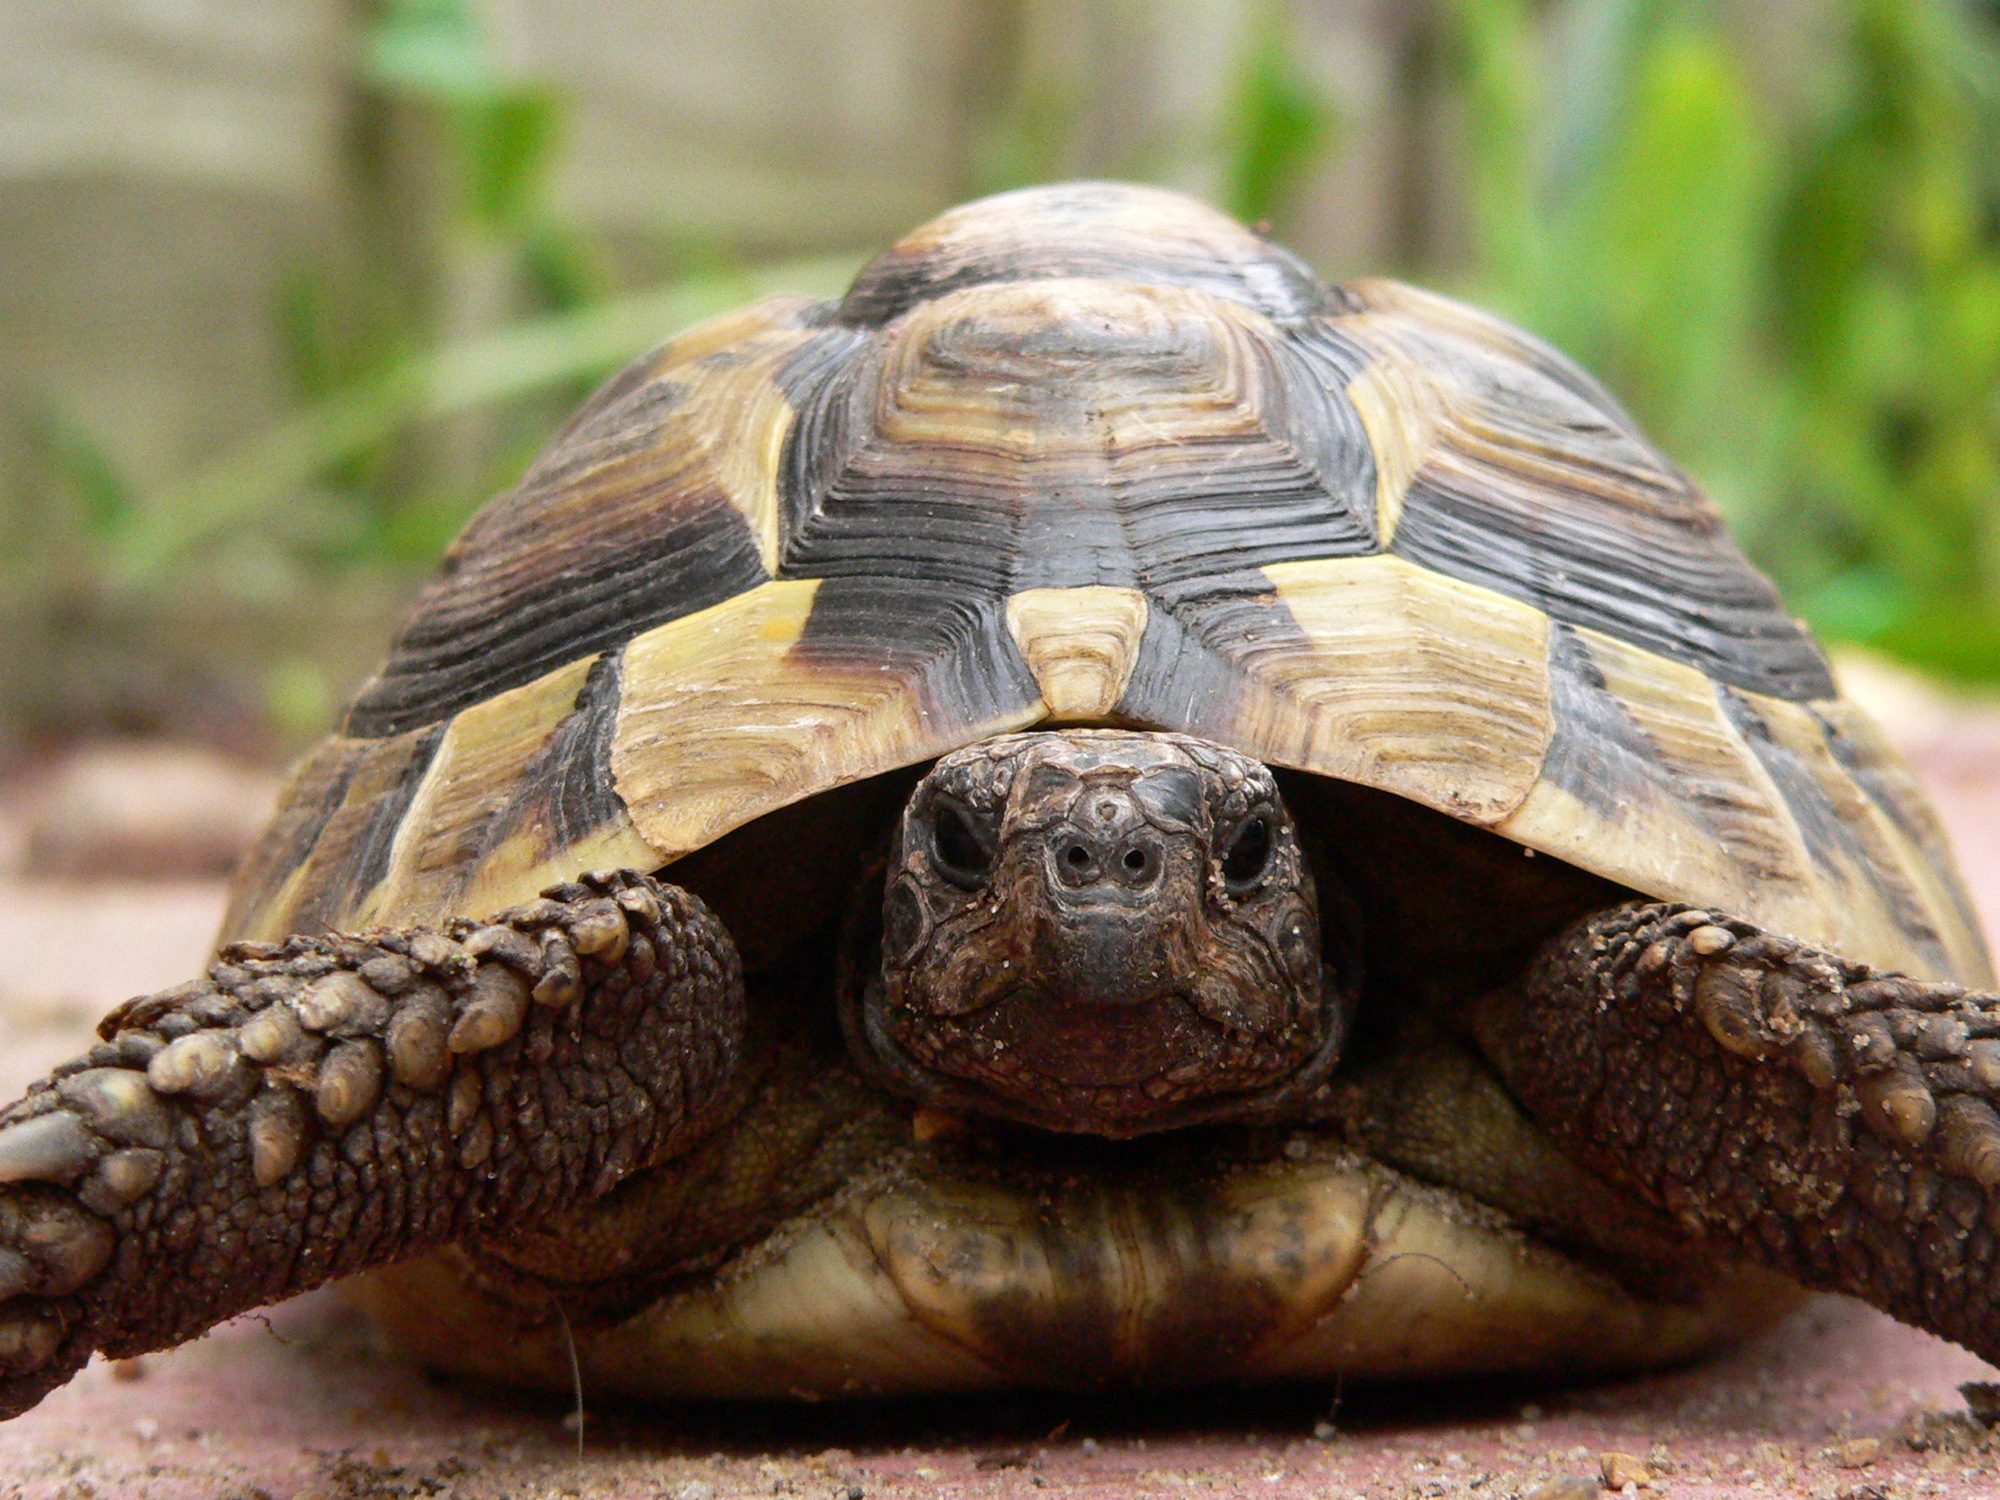 one of my tortoises